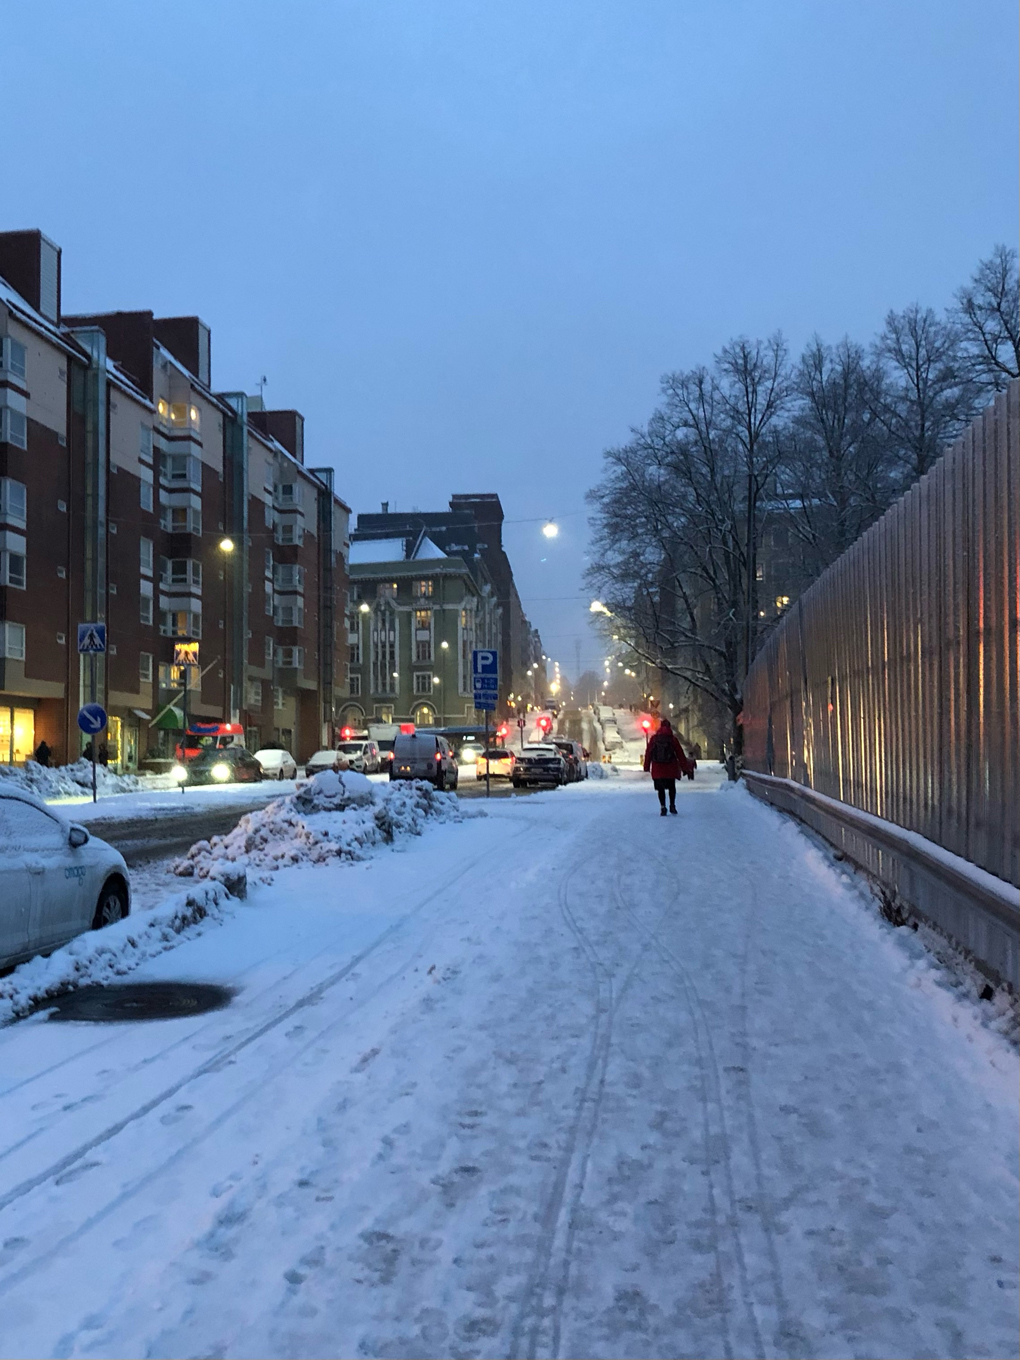 Snowy street at dusk